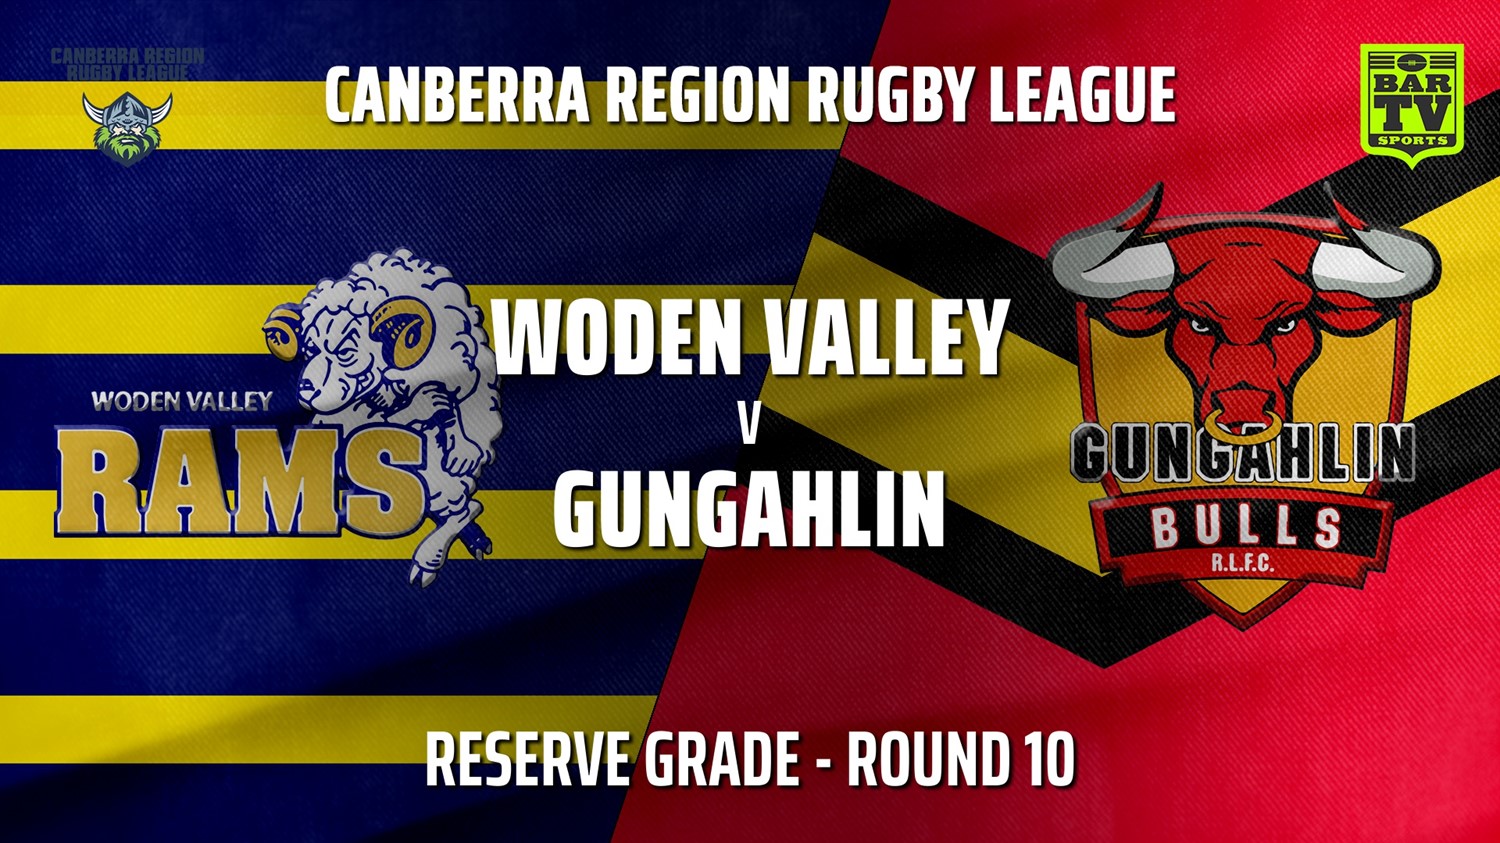 210703-Canberra Round 10 - Reserve Grade - Woden Valley Rams v Gungahlin Bulls Slate Image